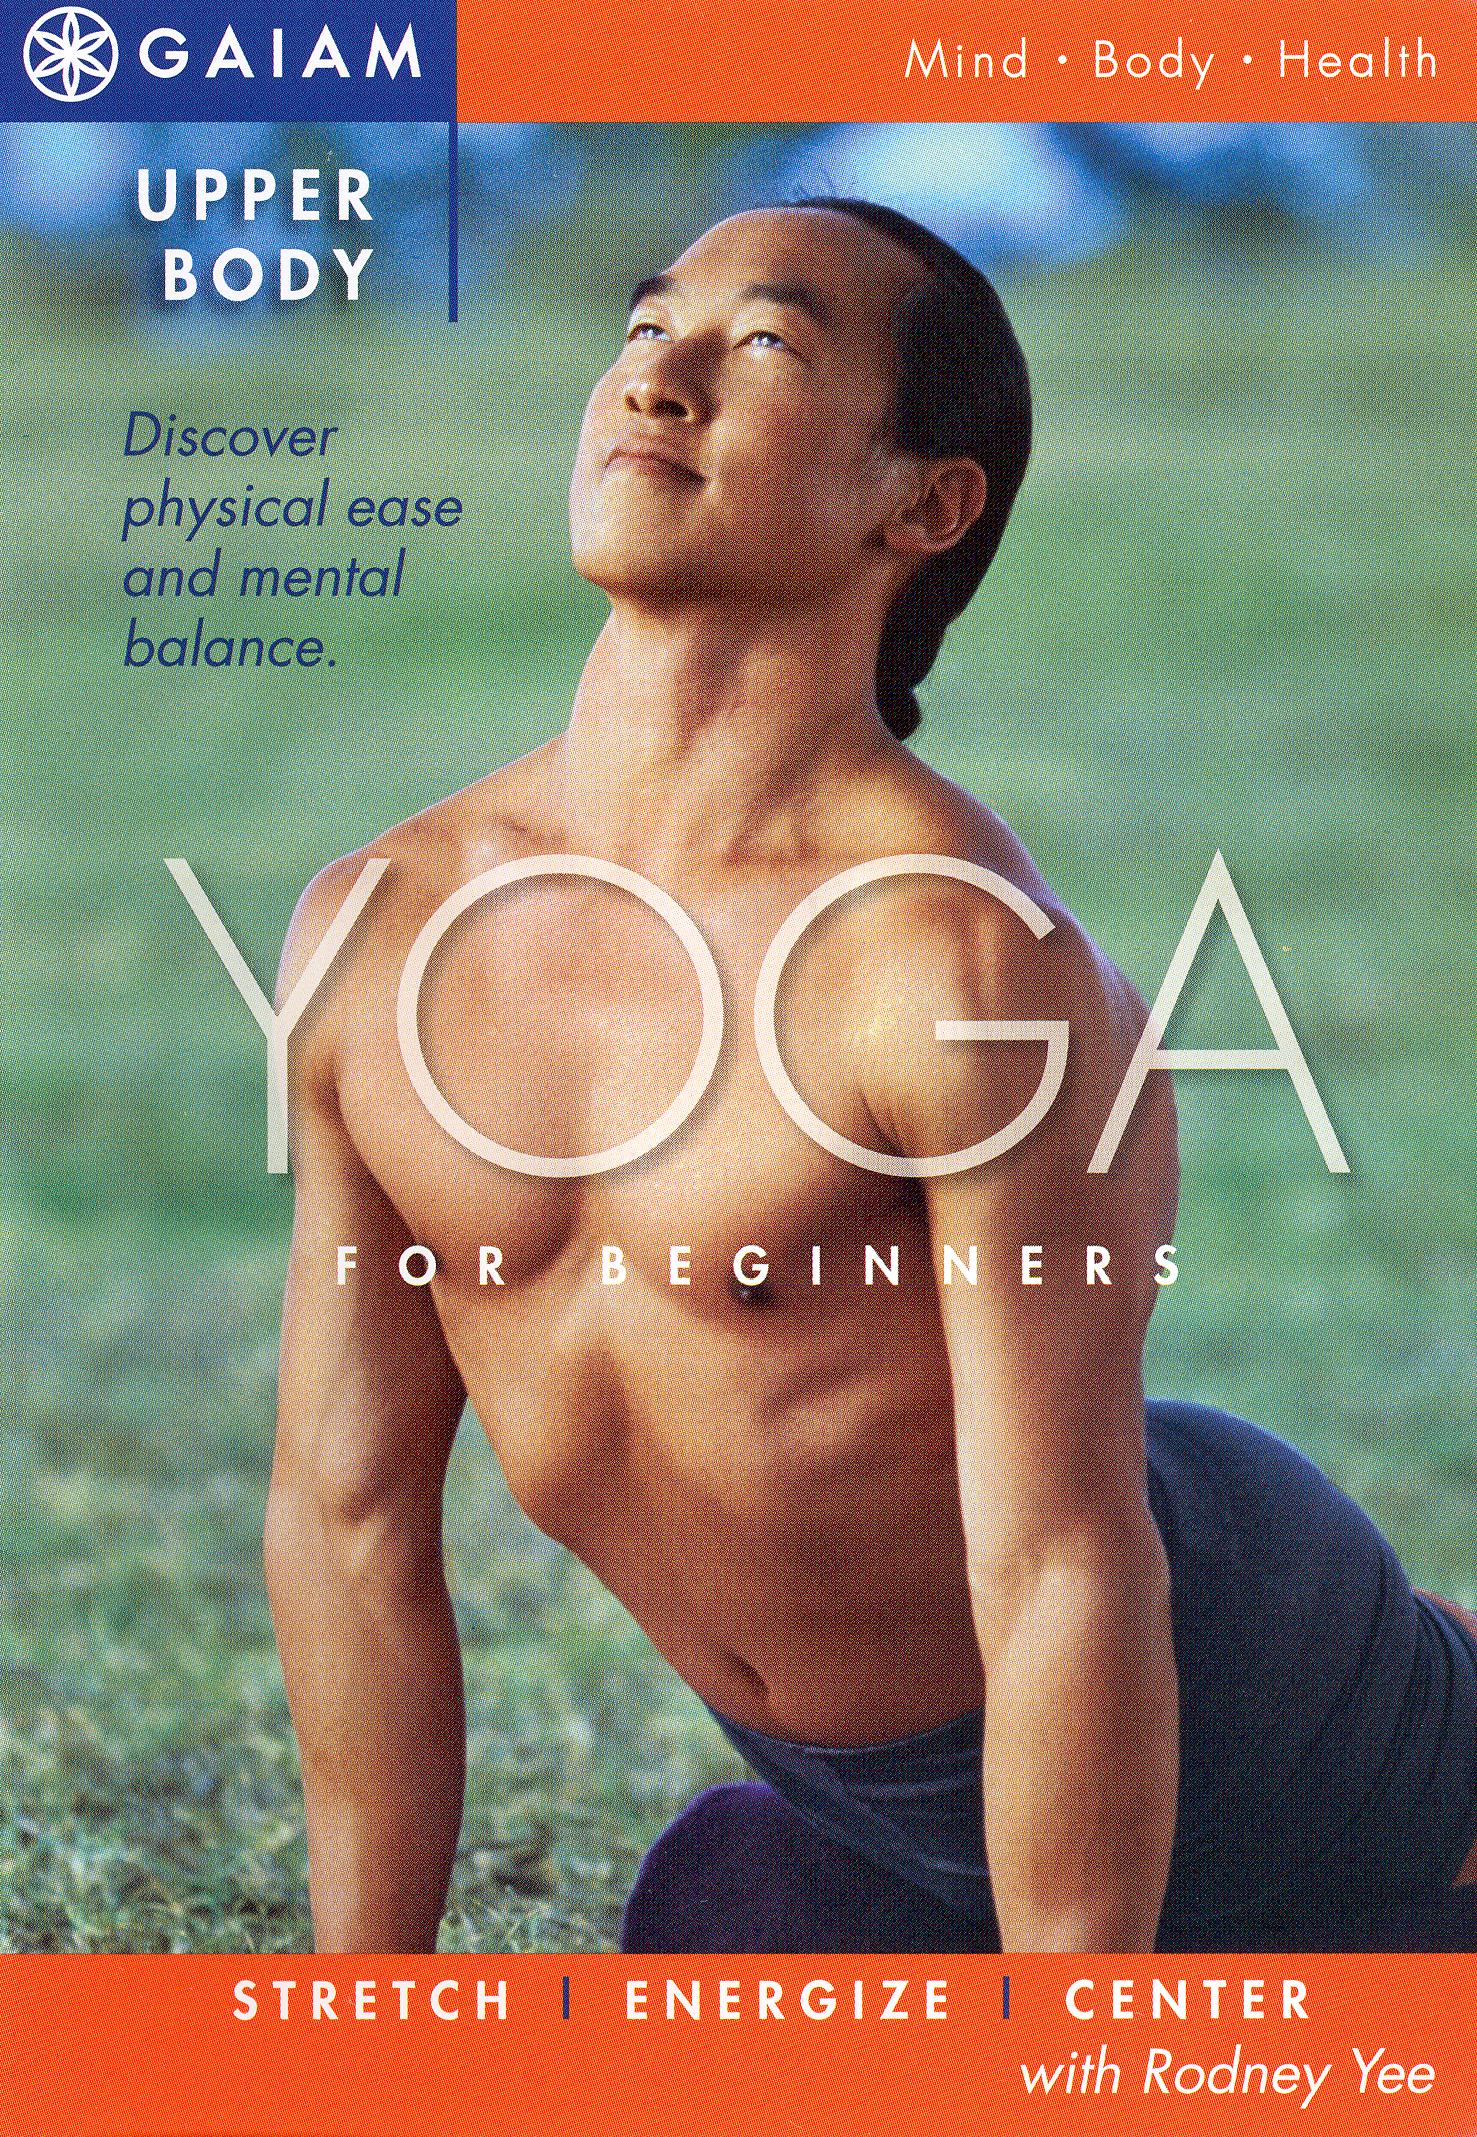 Om Yoga in a Box: Intermediate Level: Lee, Cyndi: 9781561709724